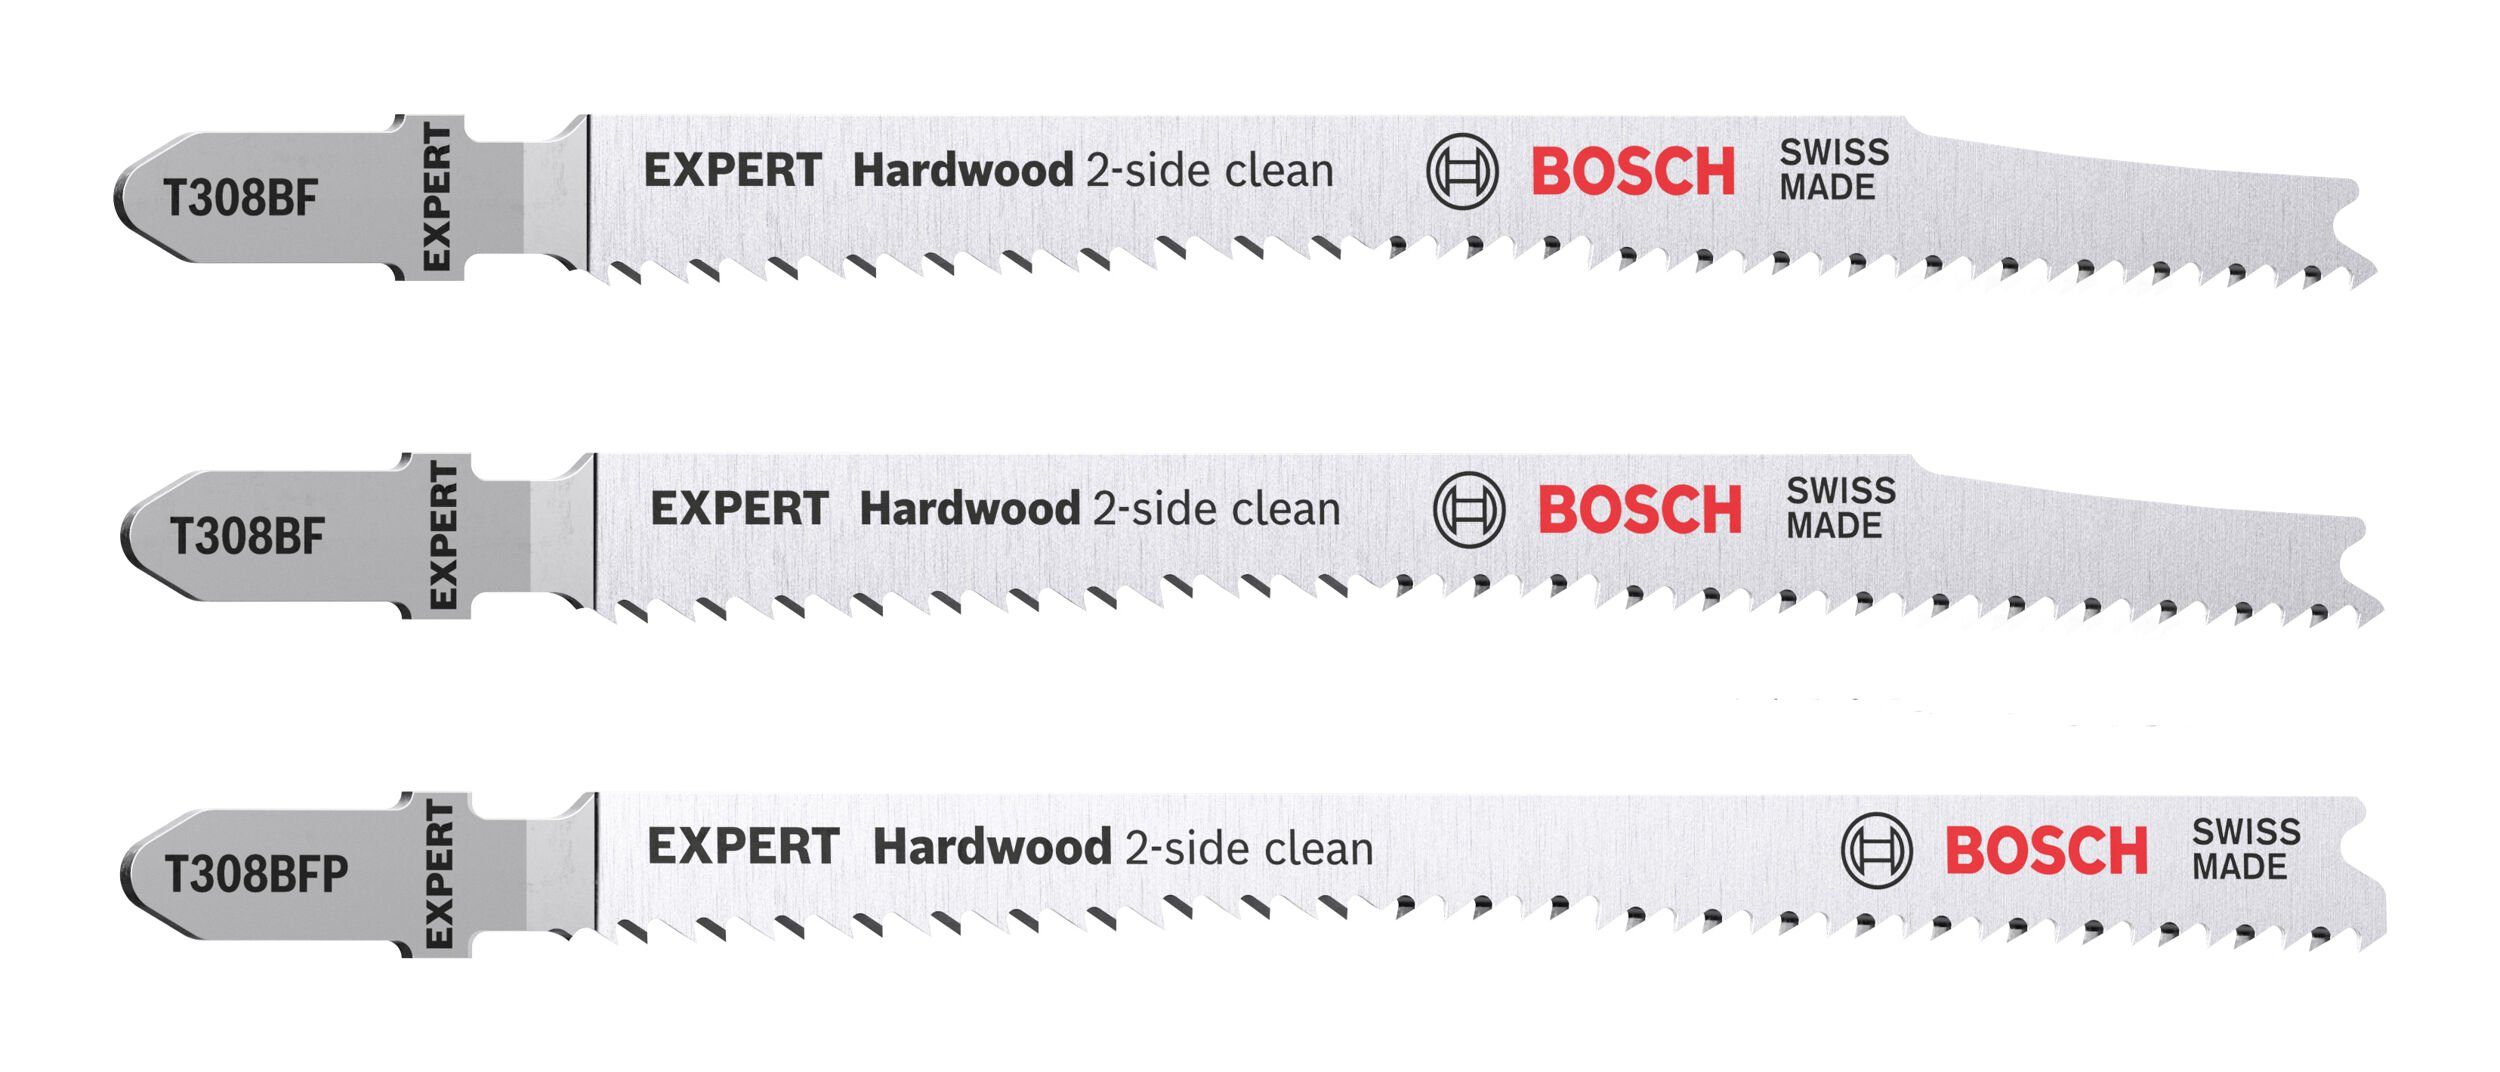 abrasive (Set, Professional T308BF/BFP, Stichsägeblatt und Für 2-side 3-St), clean Hardwood Bosch Hartholz EXPERT